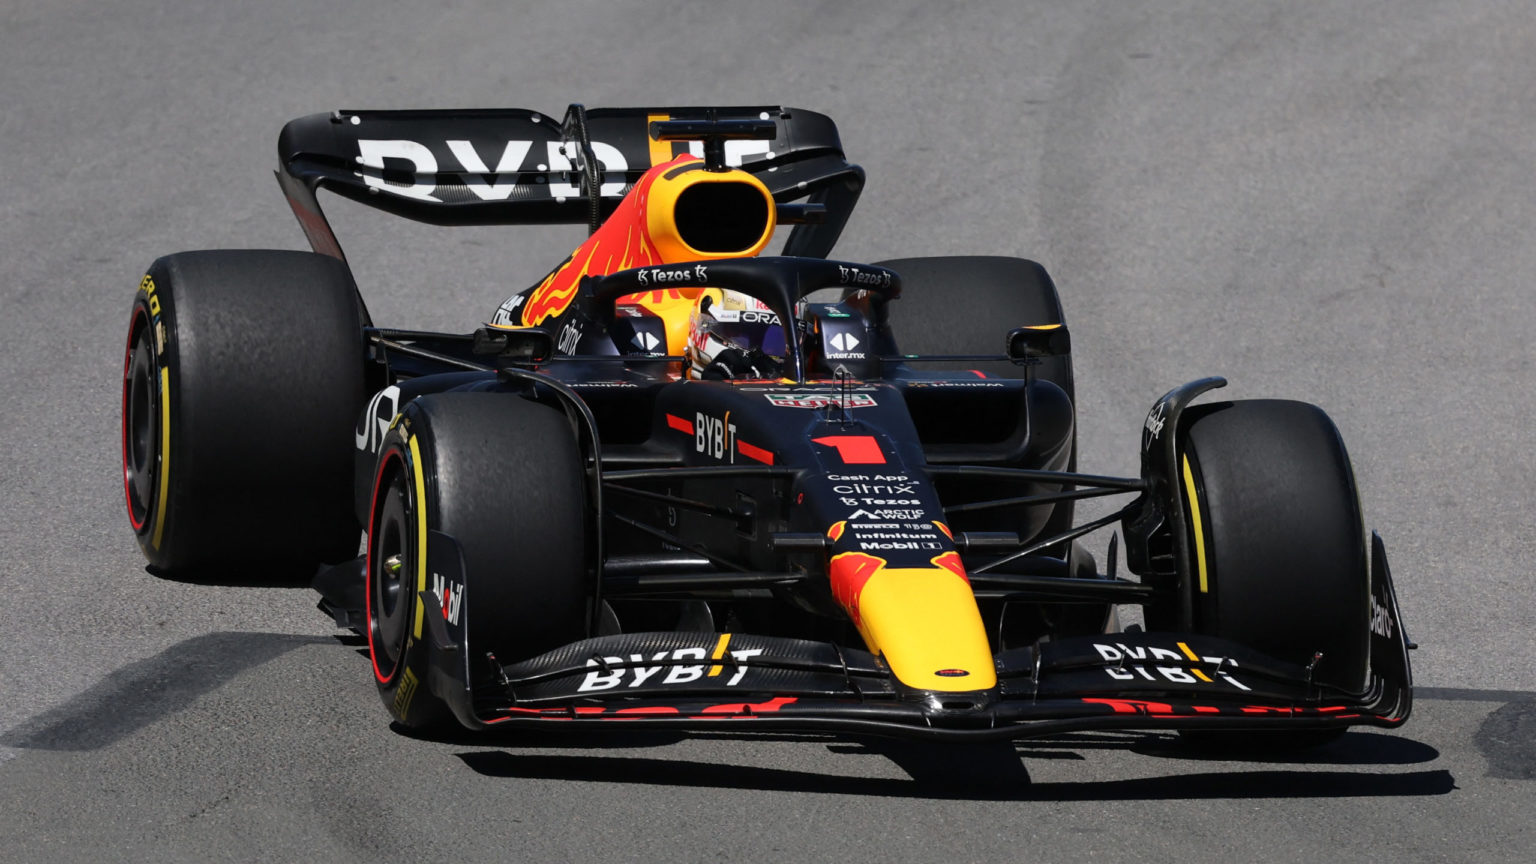 Verstappen se lleva el triunfo en Canadá por delante de Carlos Sainz y refuerza su liderazgo